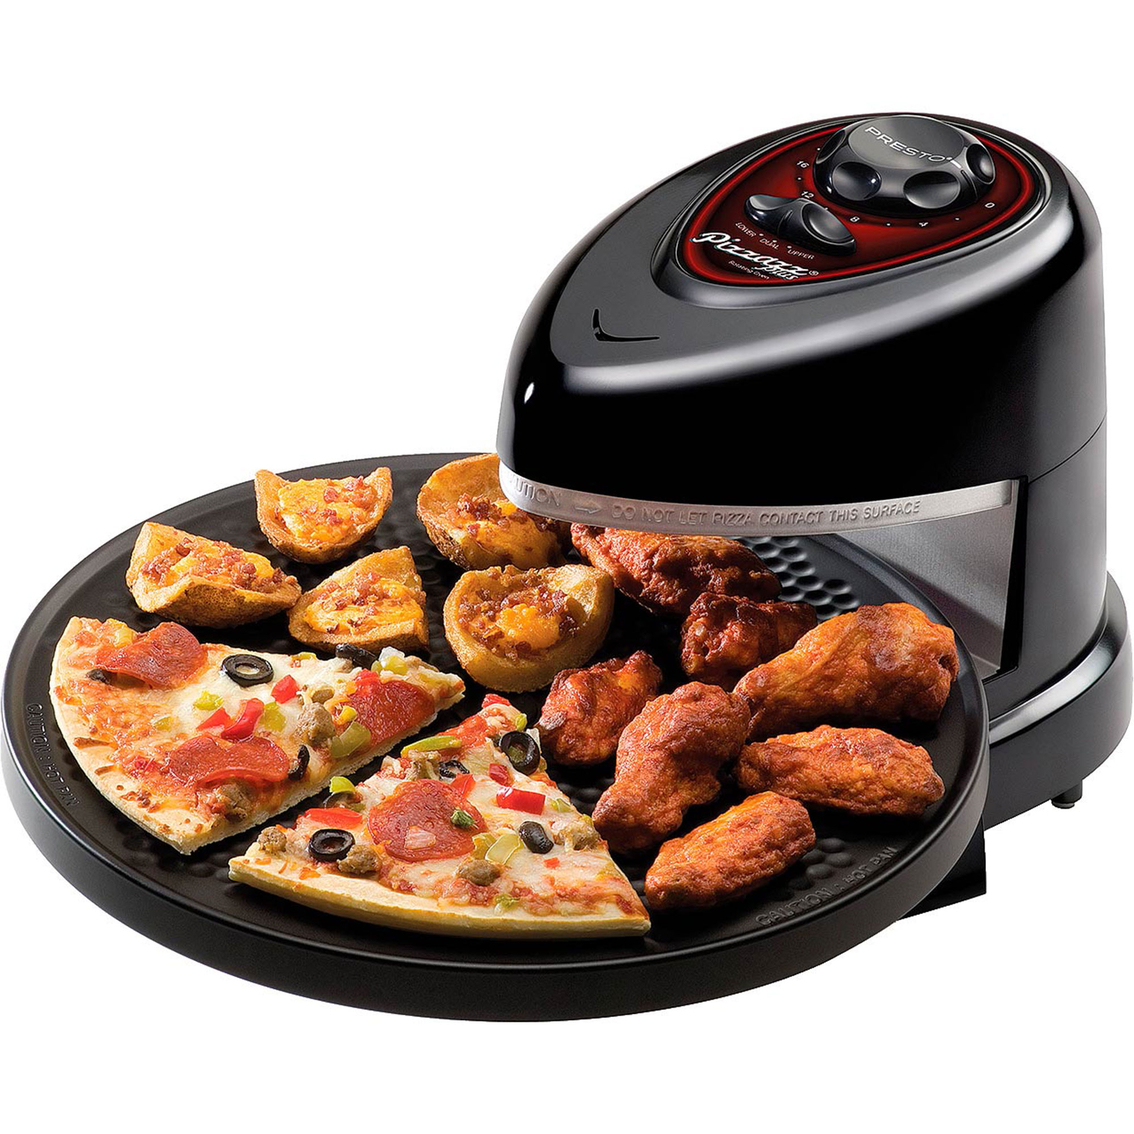 Presto Pizzazz Plus Rotating Oven